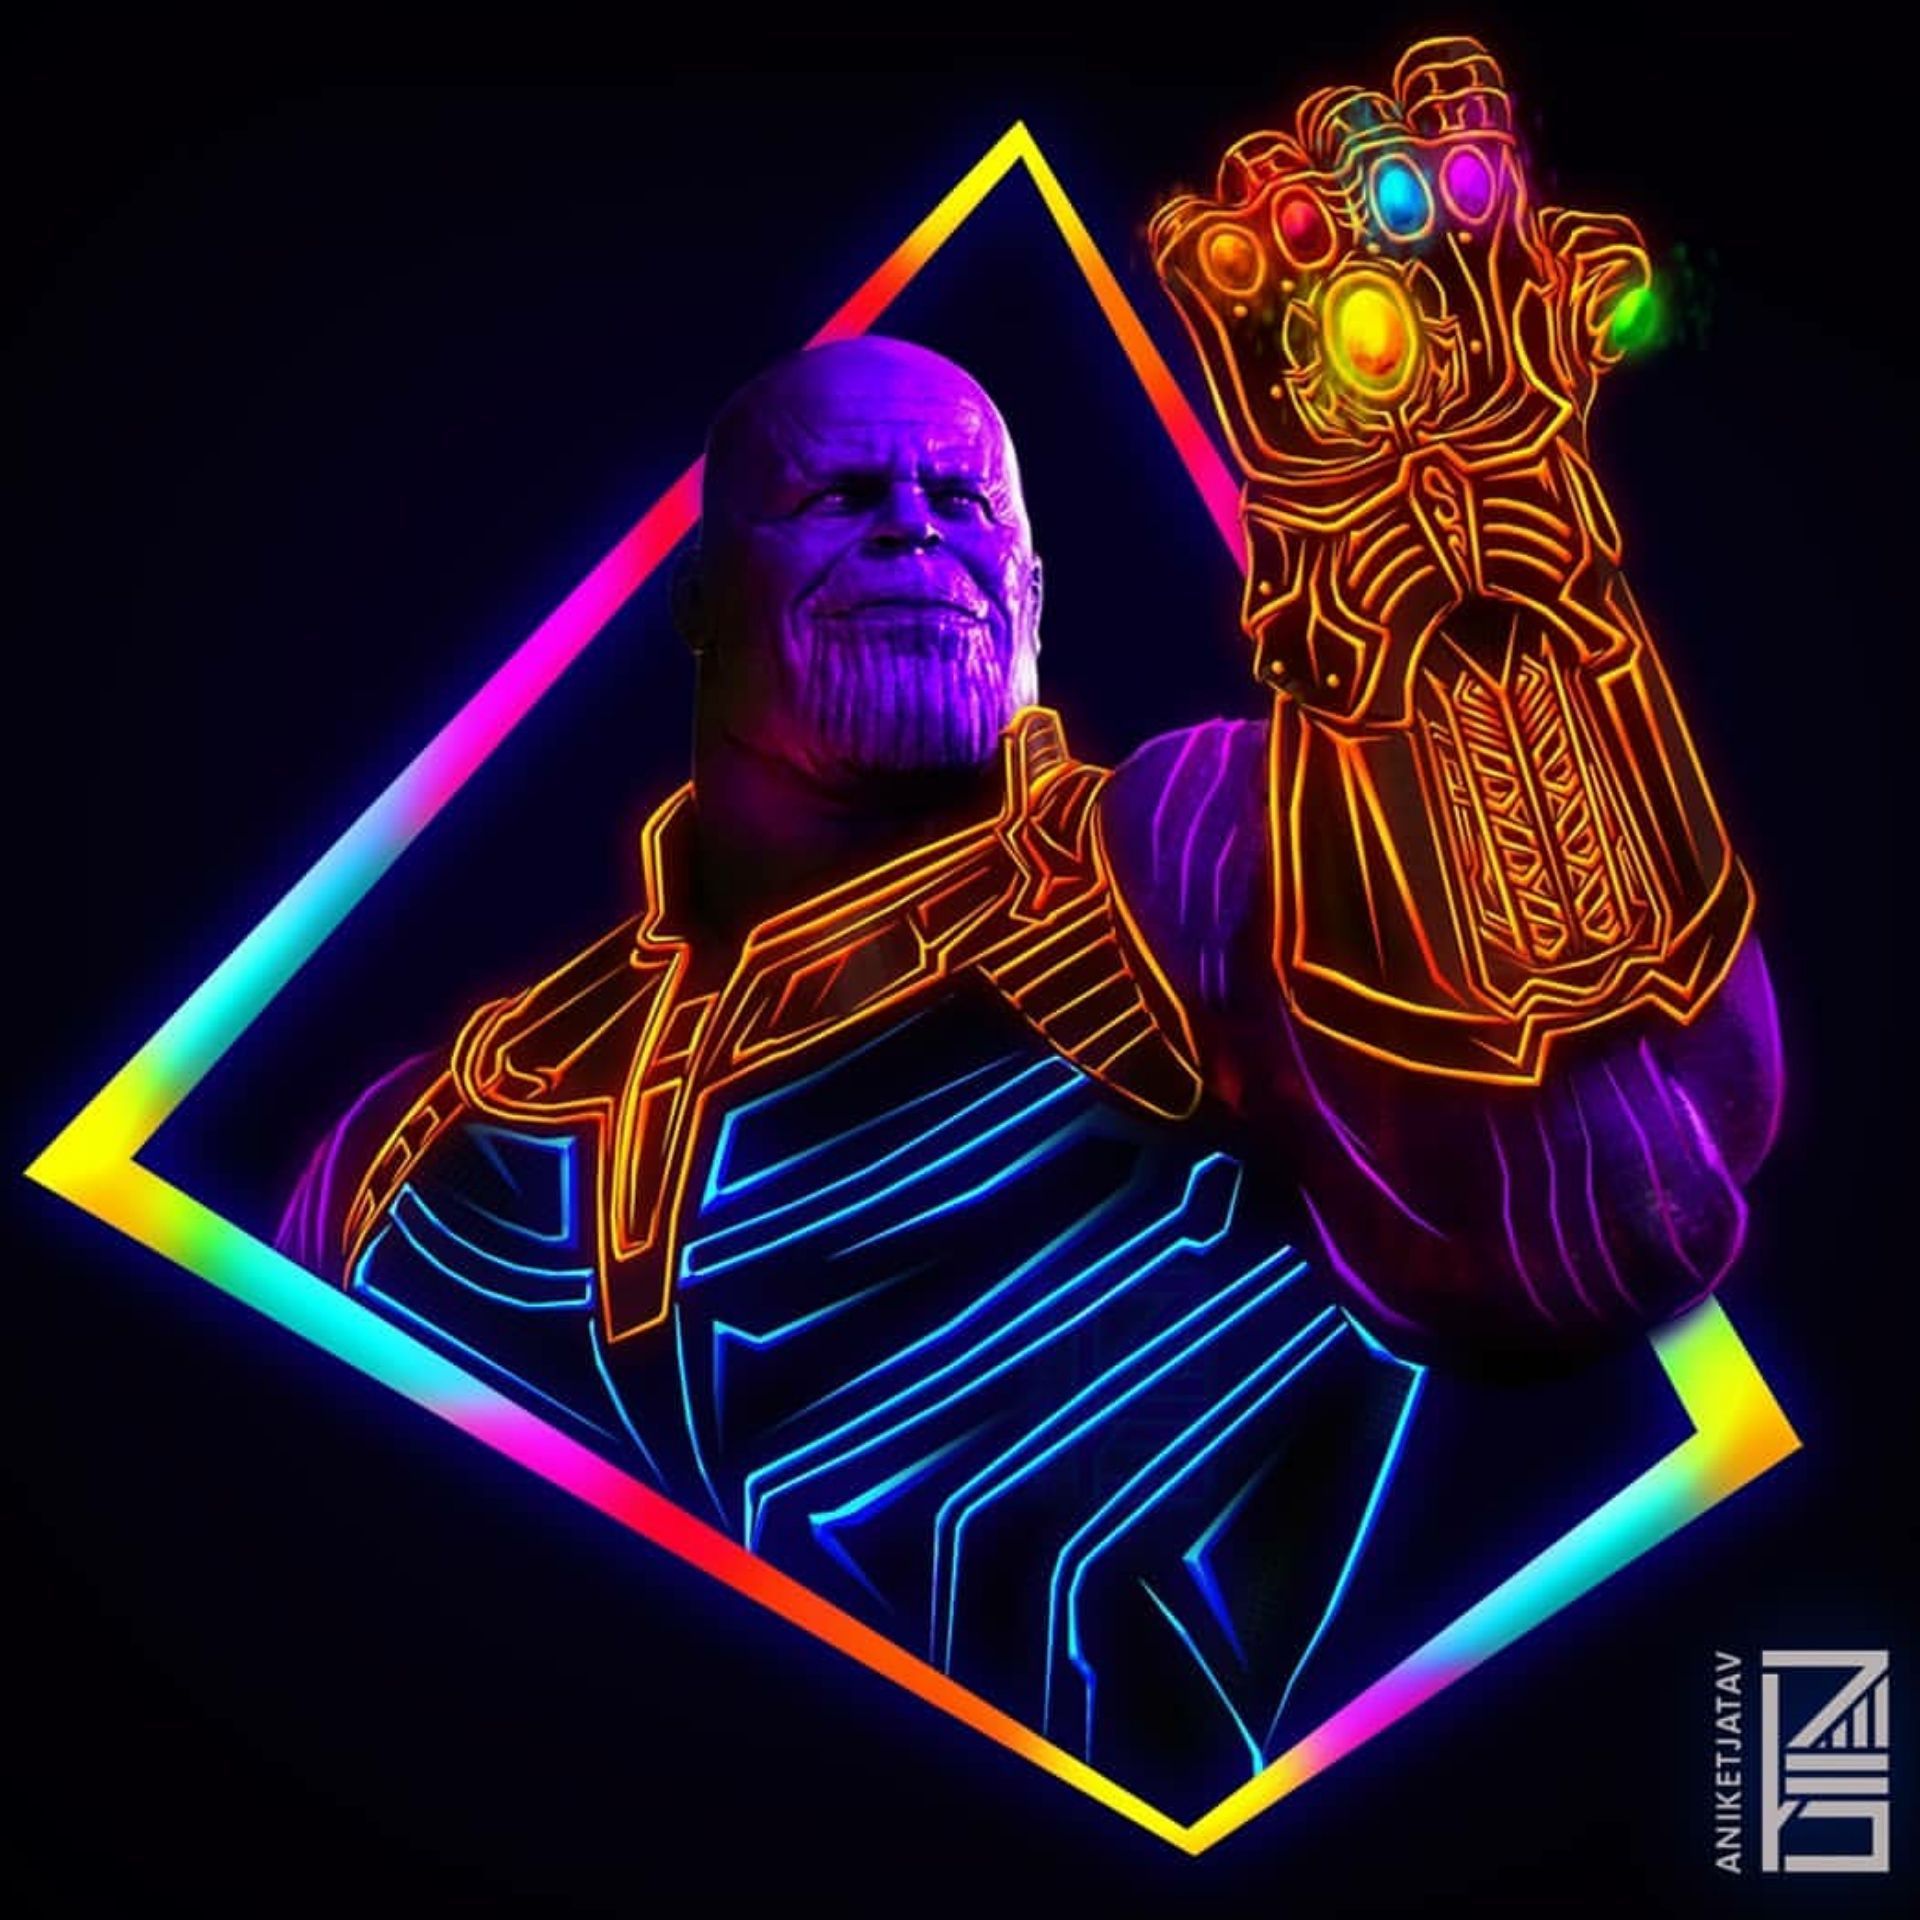 Thanos Endgame Minimalist Wallpapers